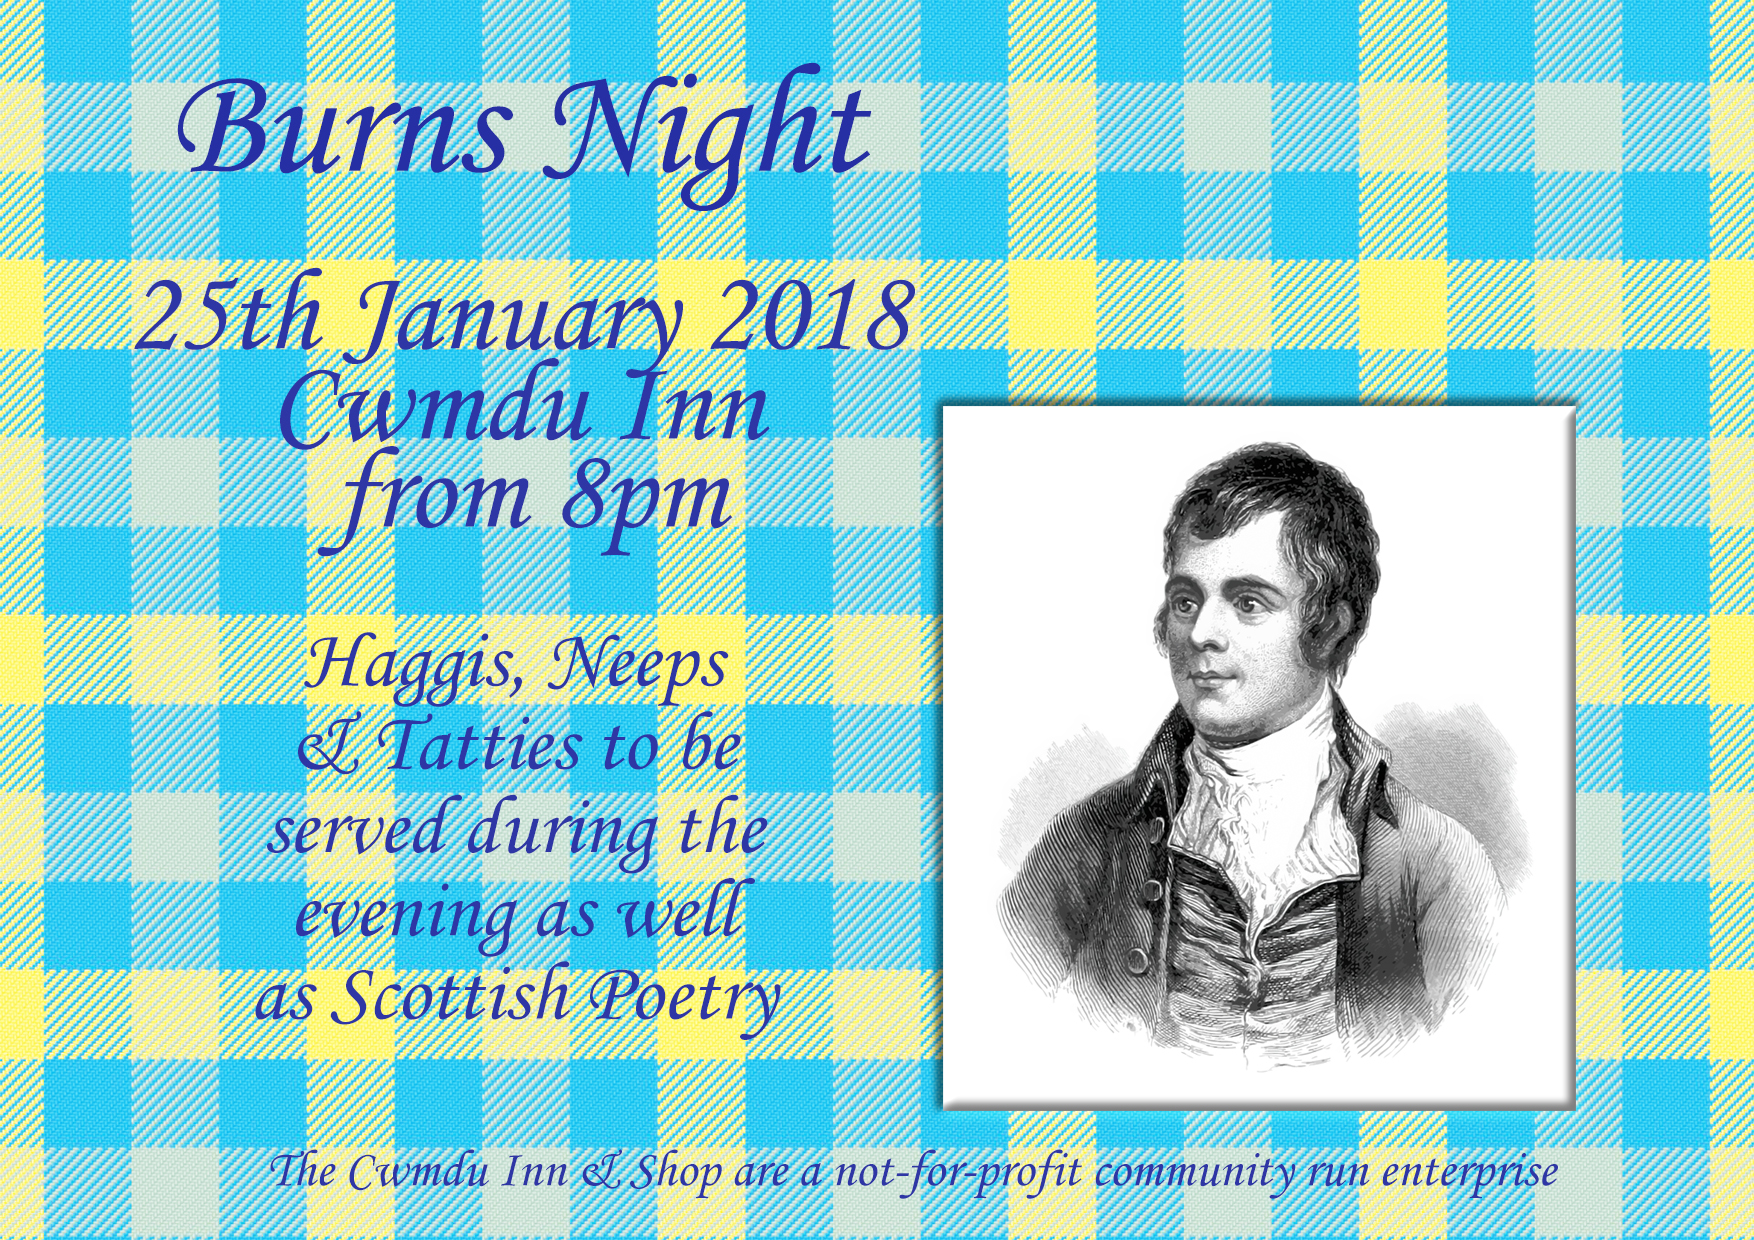 Details of 2018 Burns Night Supper at Cwmdu Inn